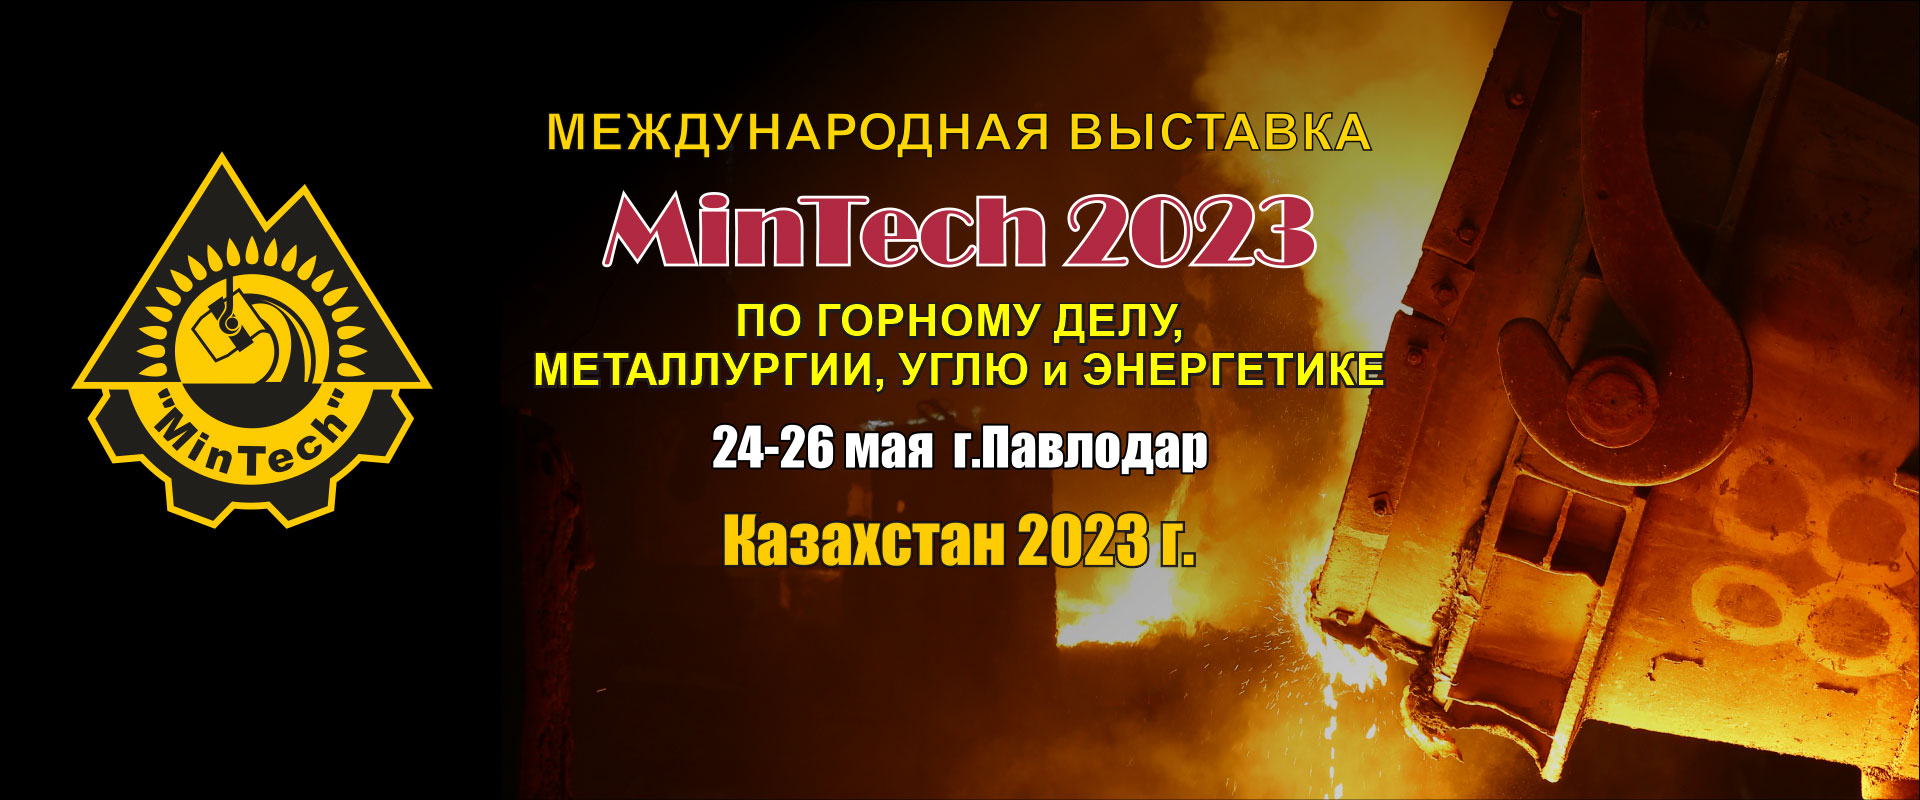 MinTech Павлодар 2023 промышленная выставка Казахстан